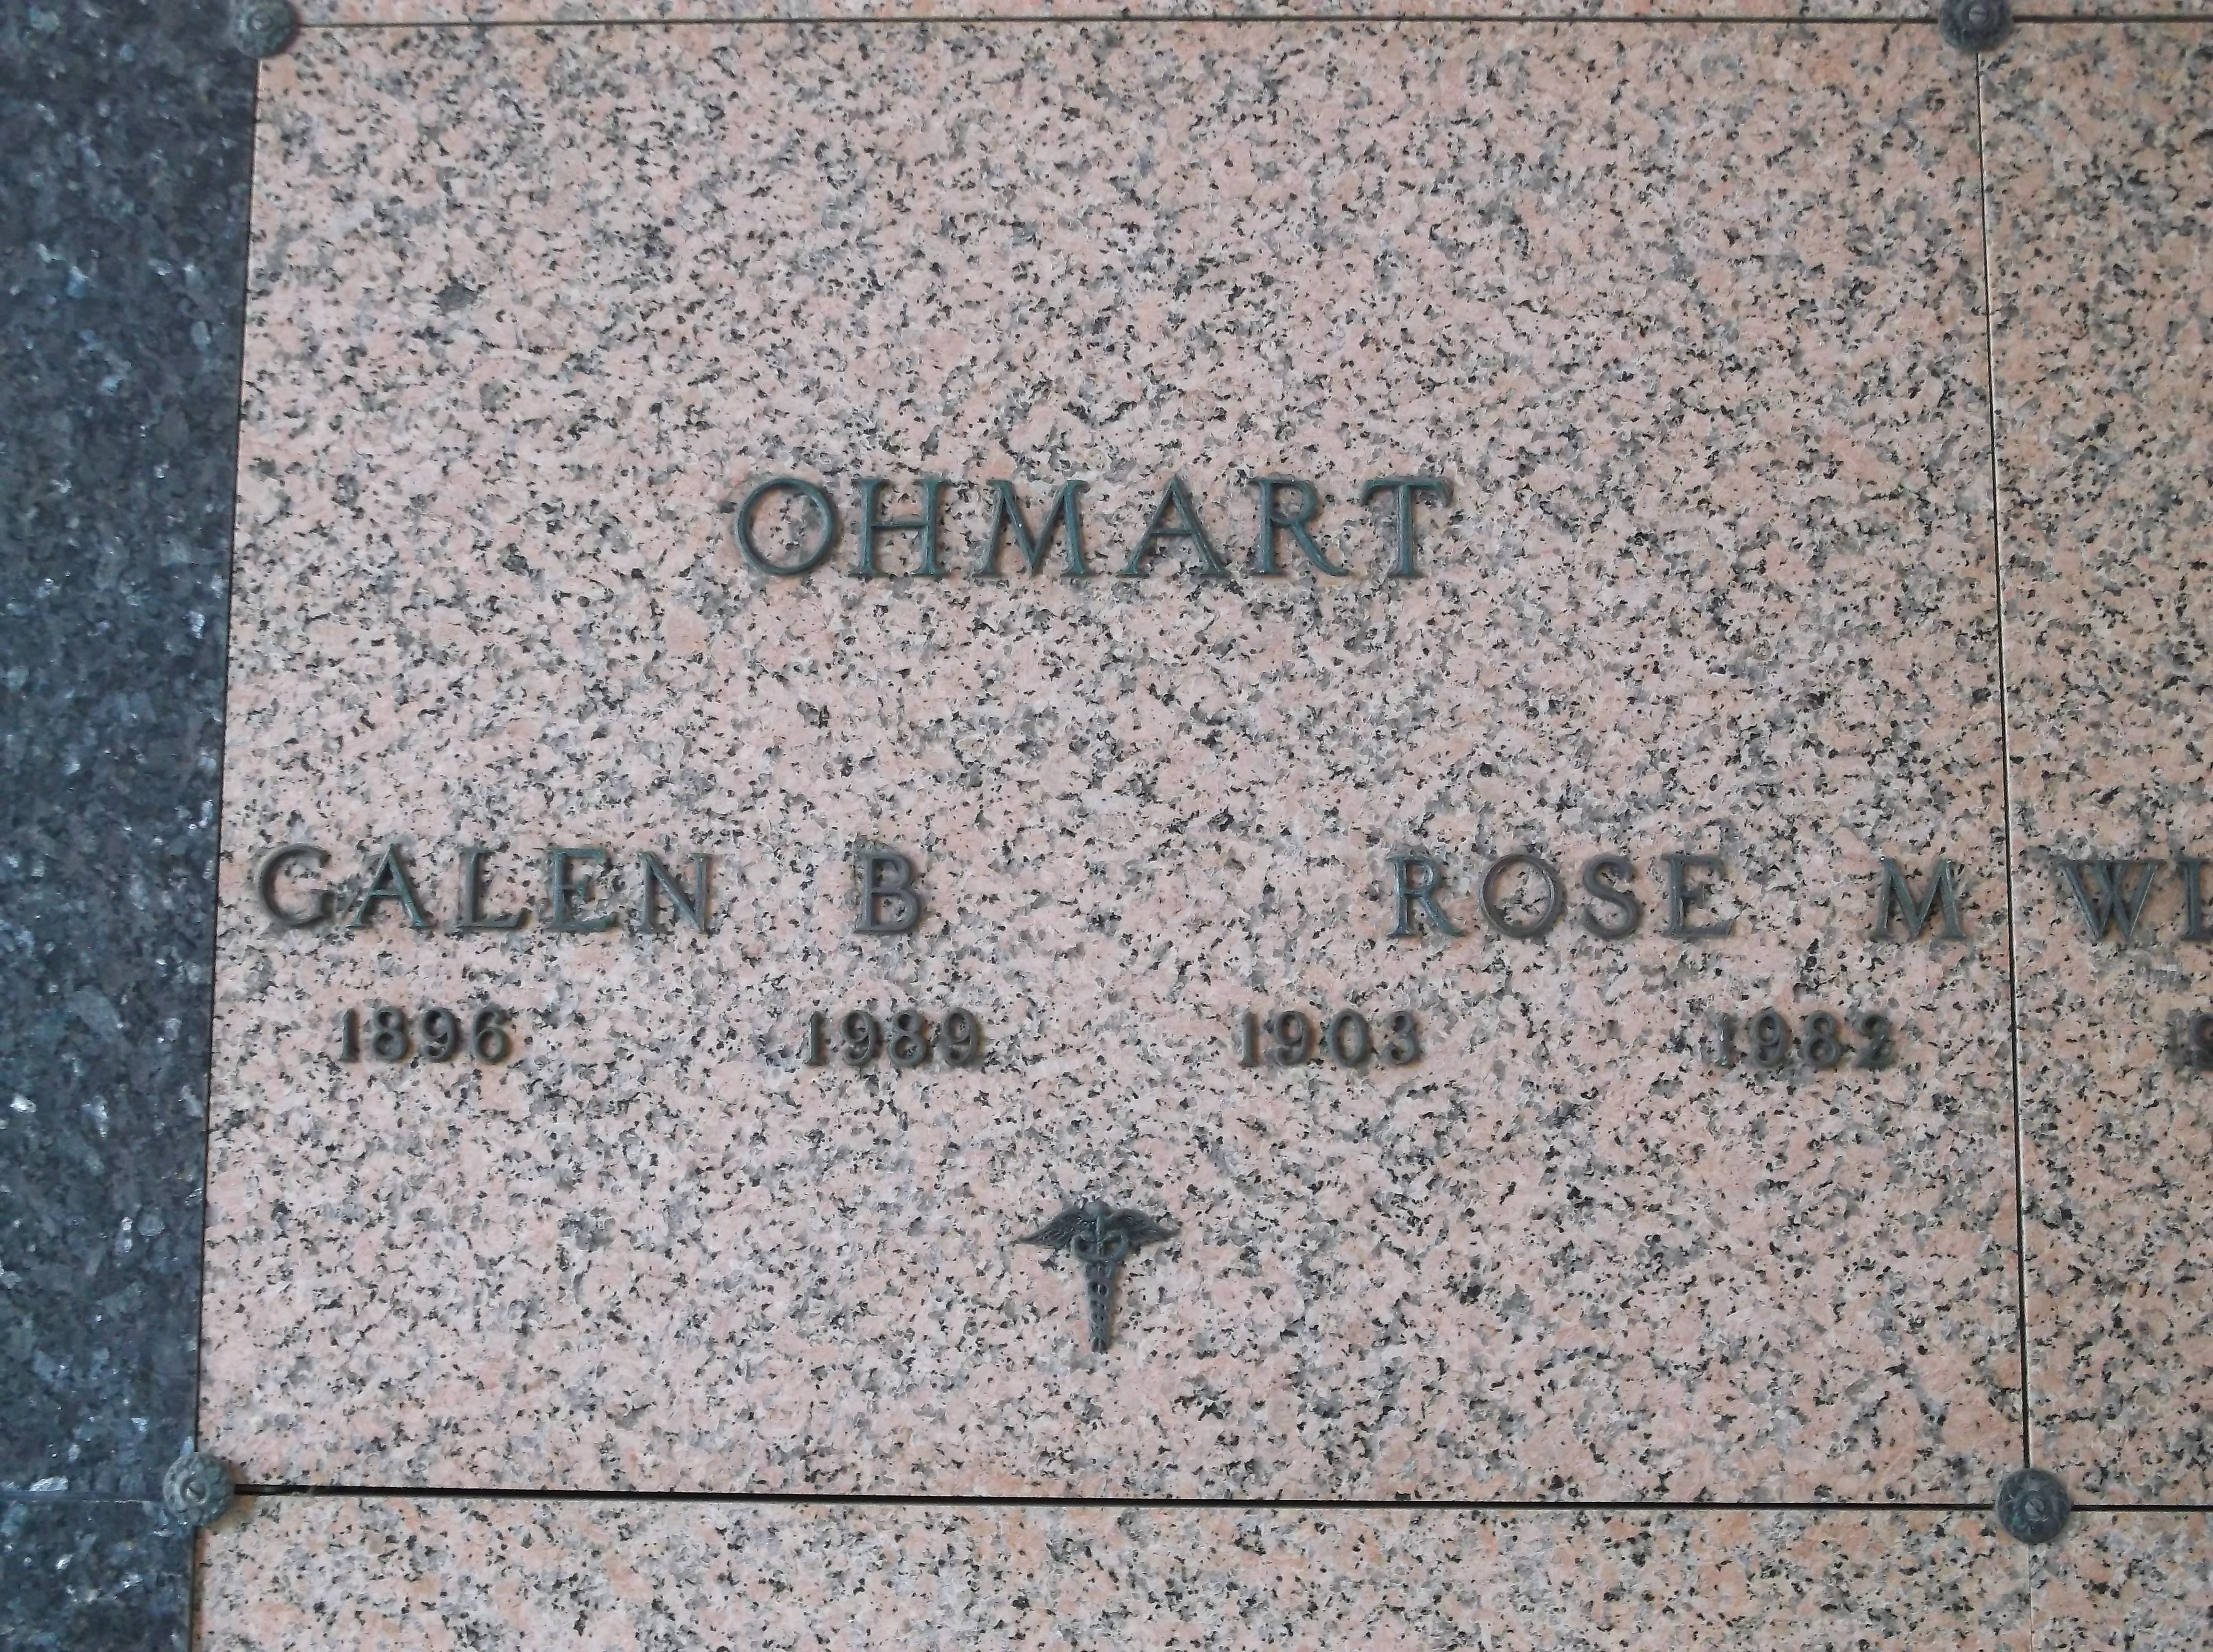 Galen B Ohmart